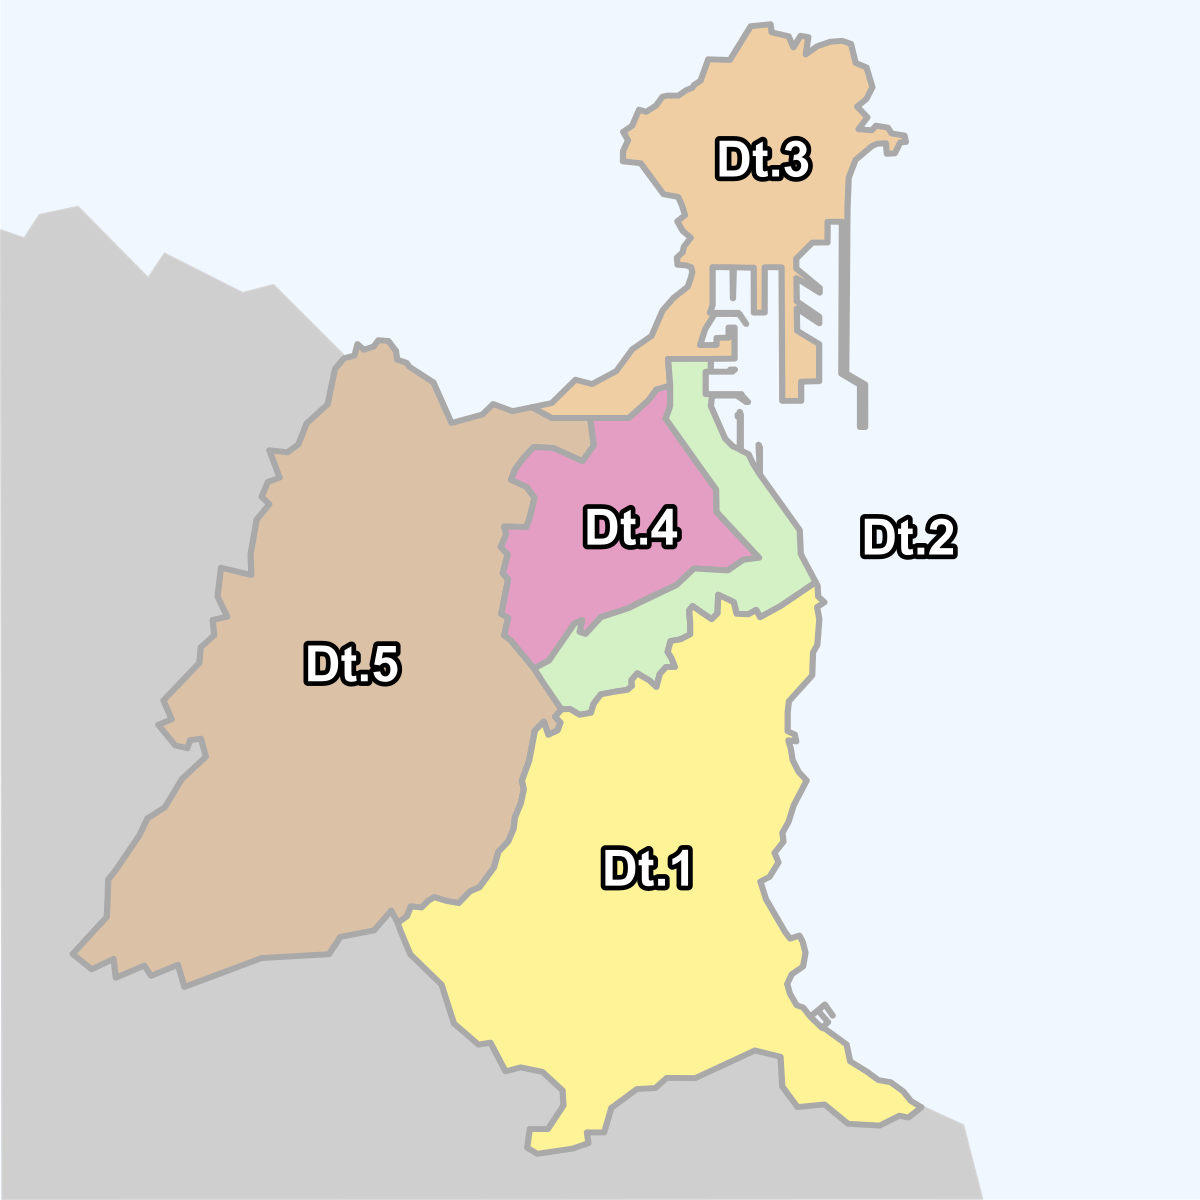 Distritos de Las Palmas de Gran Canaria - Wikipedia, la enciclopedia libre